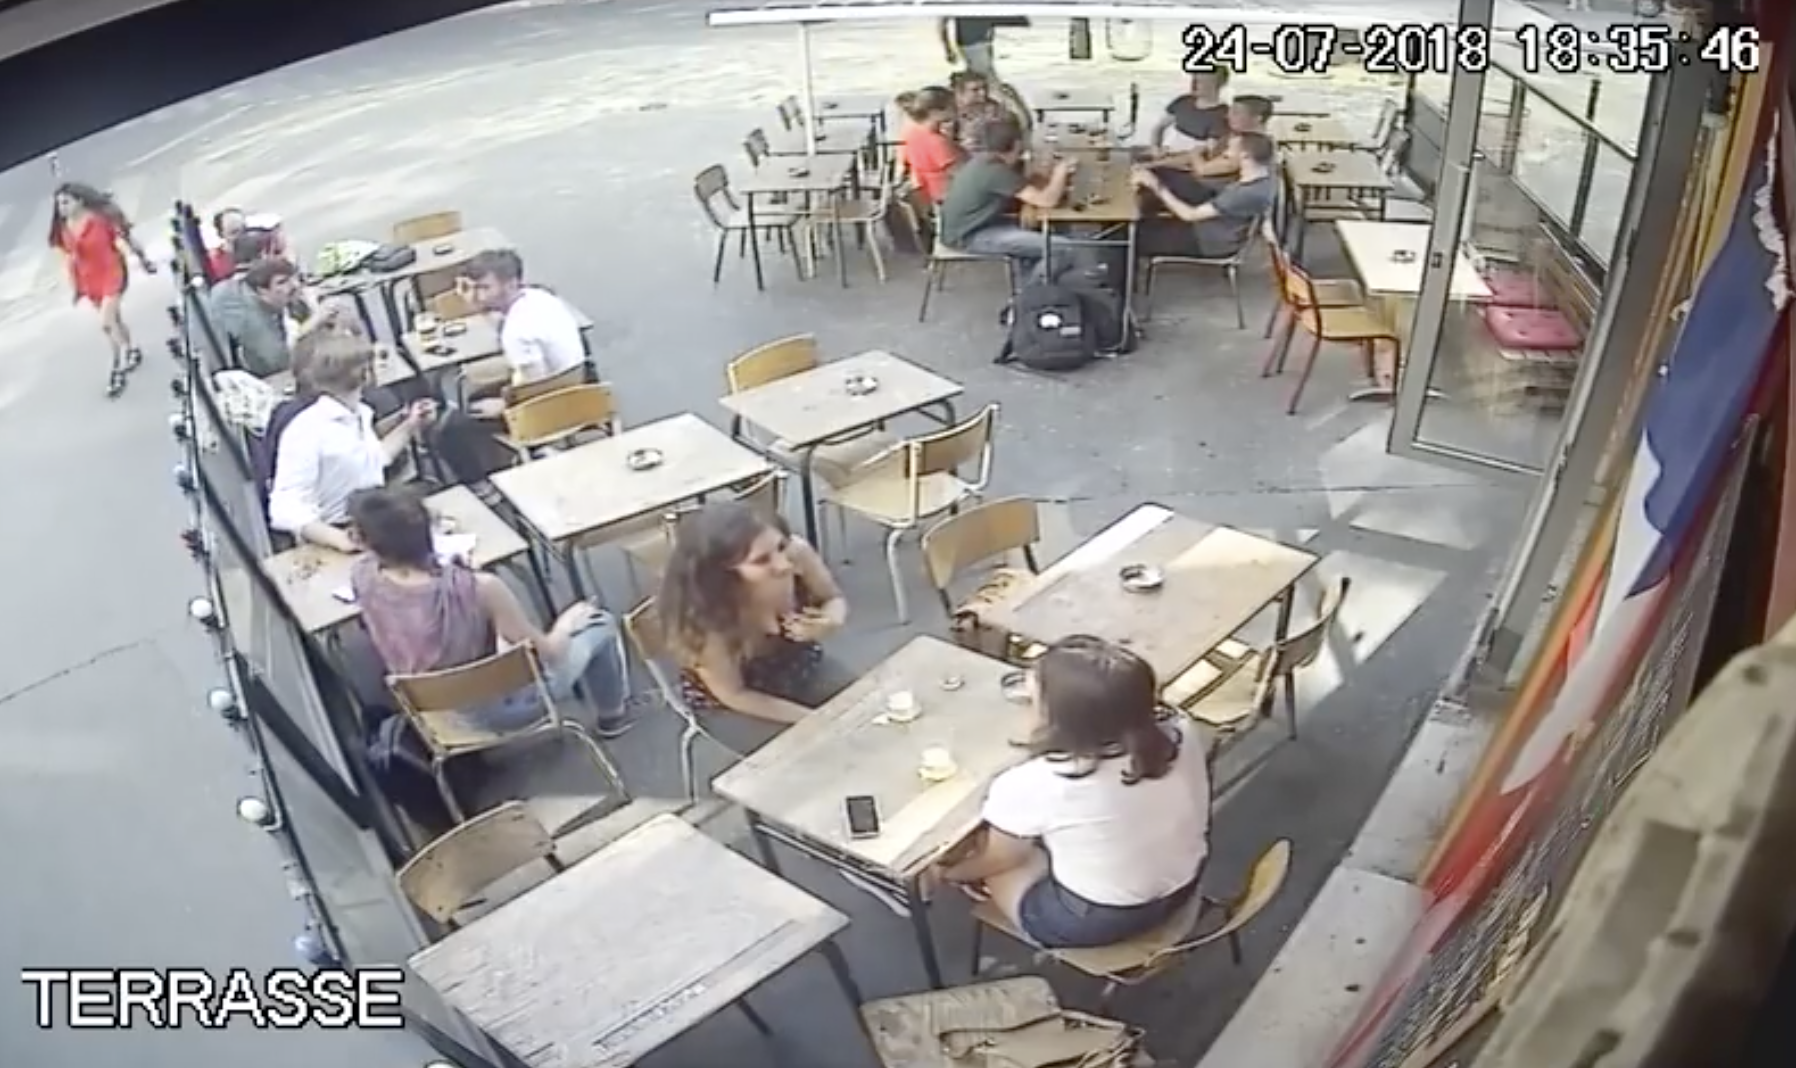 [VIDEO] Une jeune femme violemment agressée en pleine rue à Paris